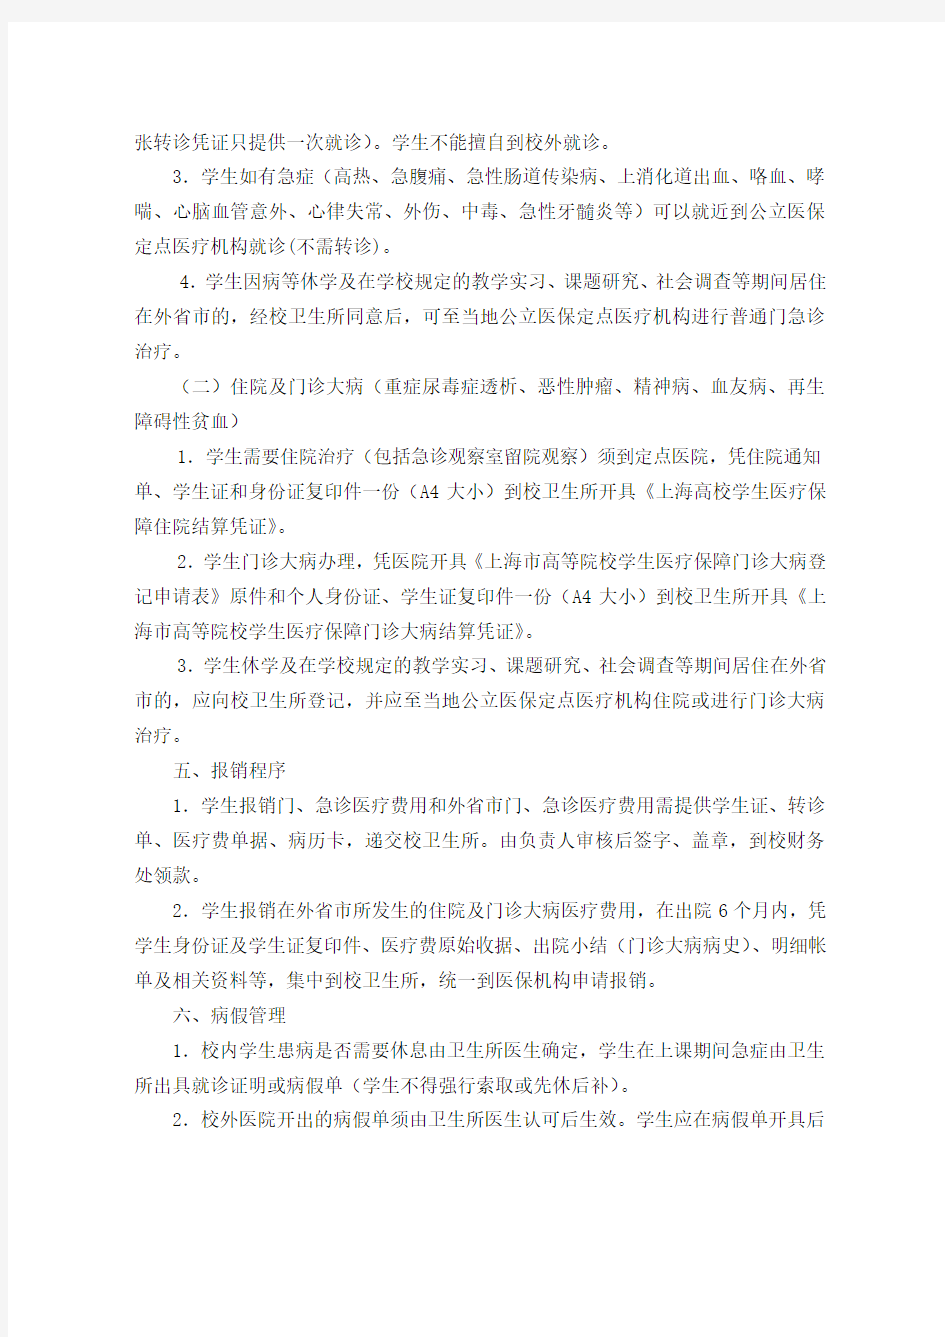 上海电机学院学生医疗保障规定